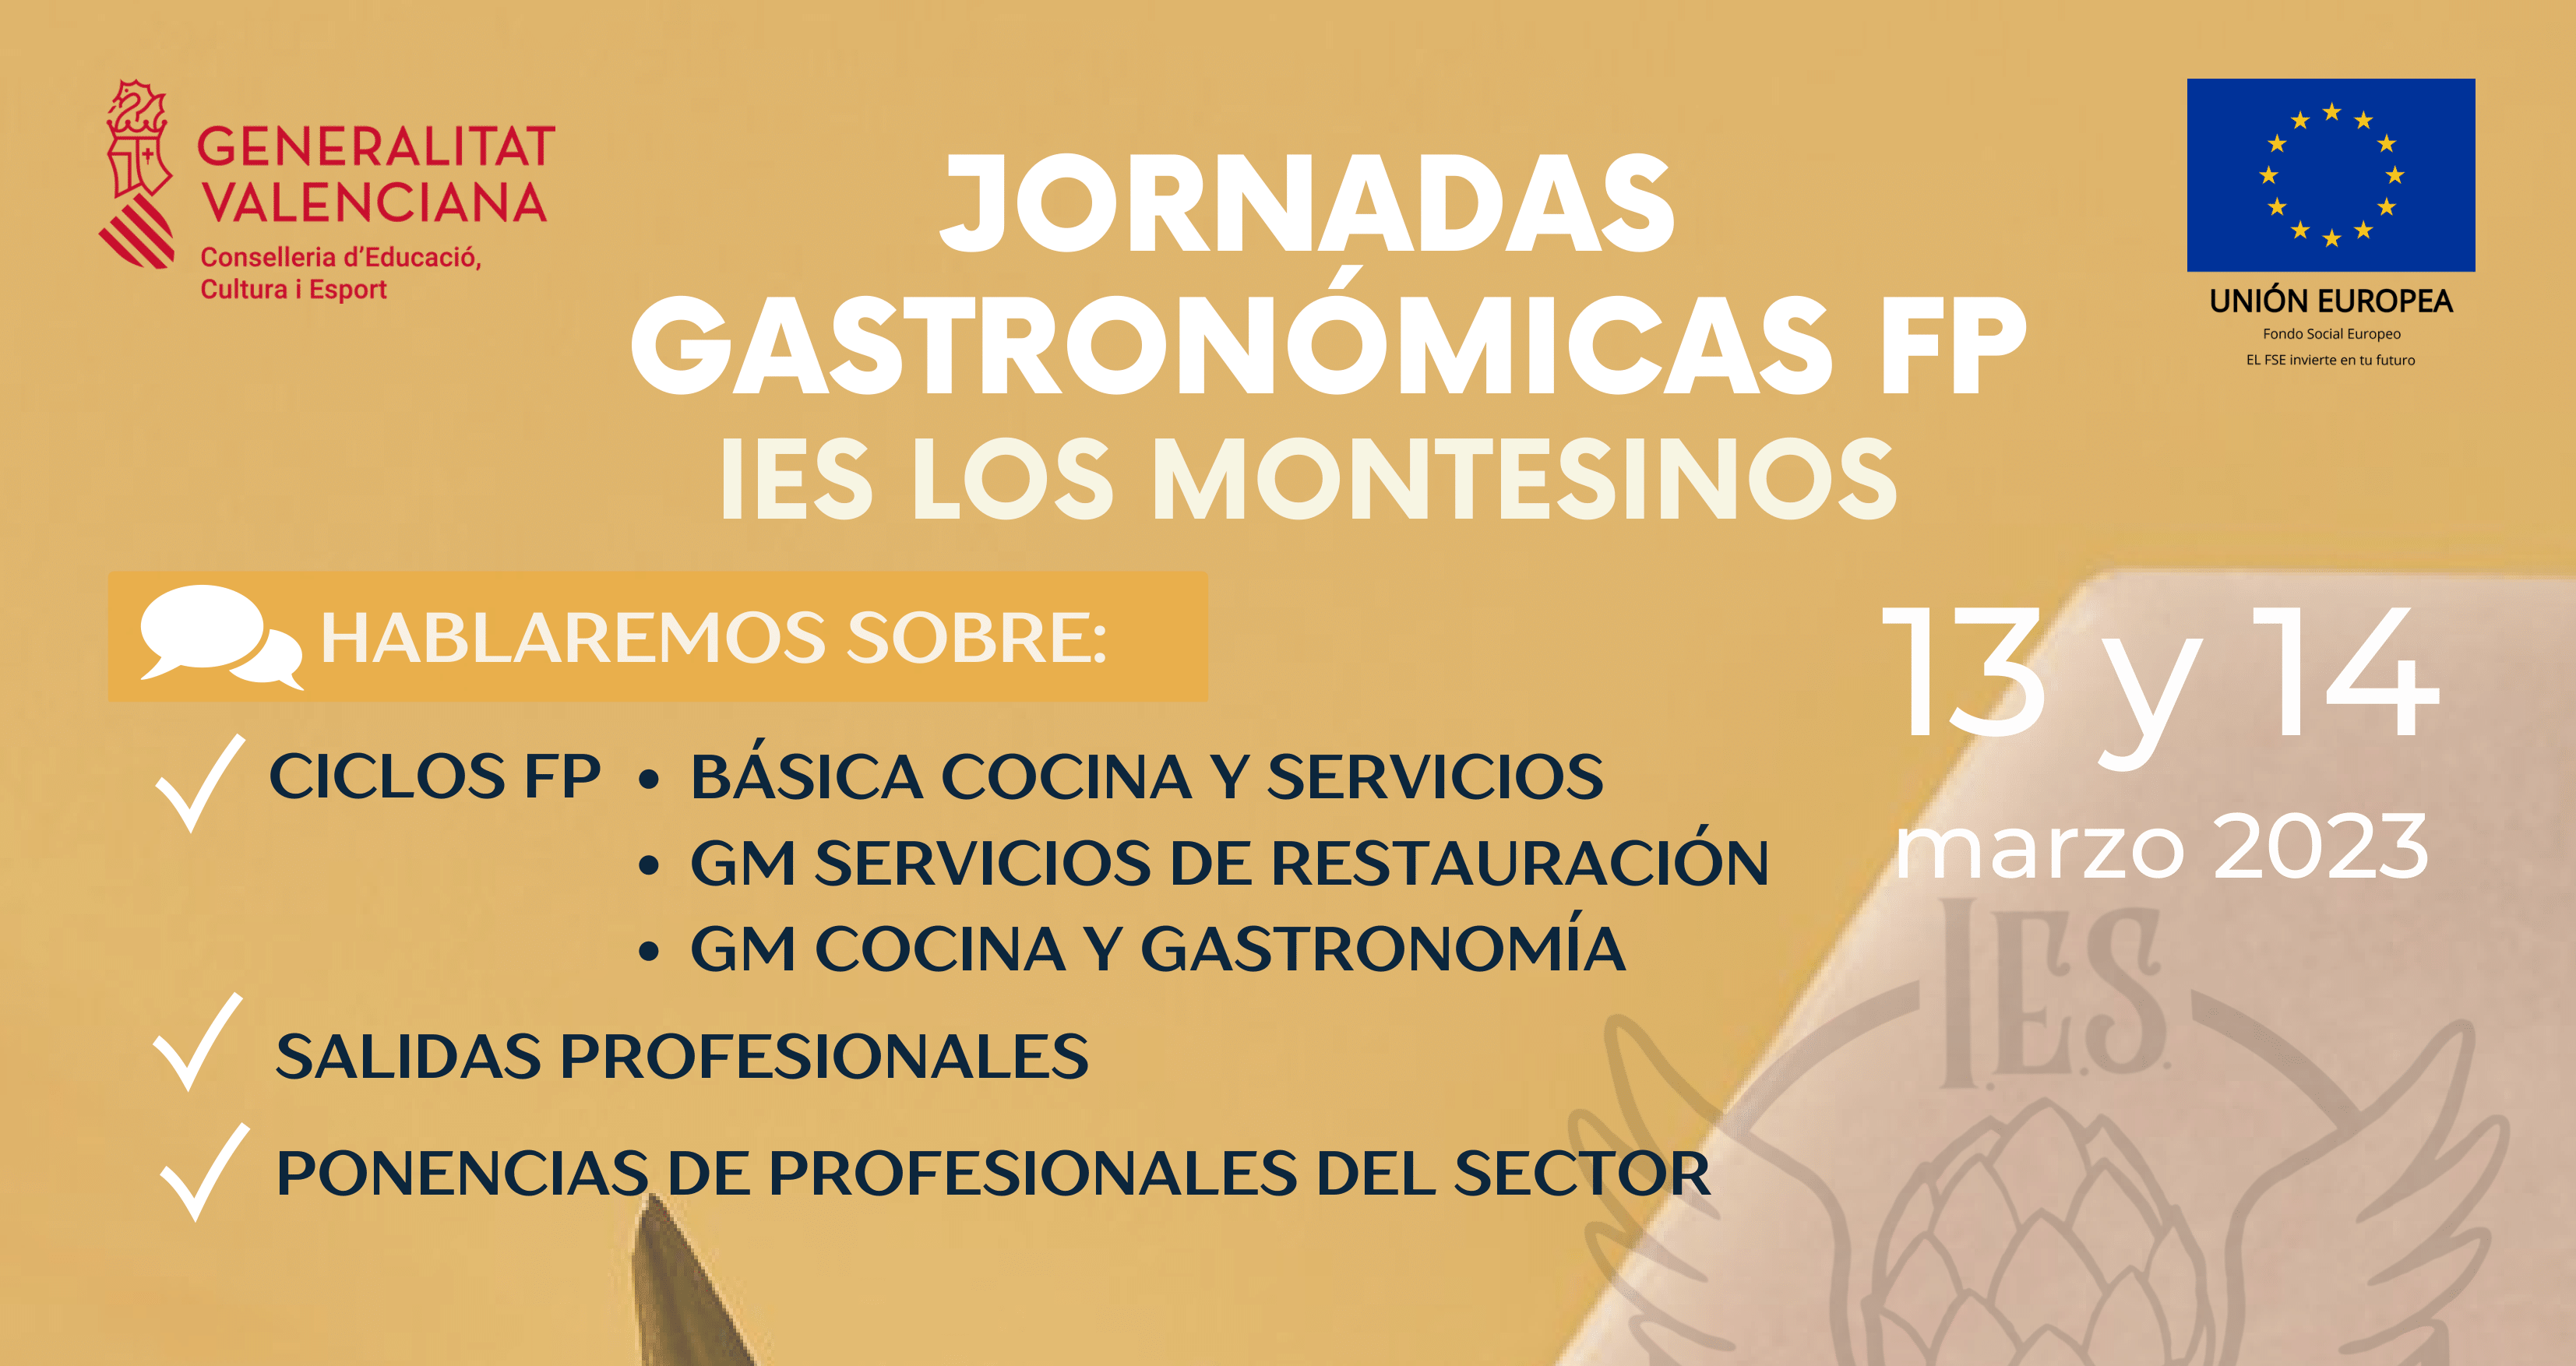 El IES Los Montesinos organiza sus segundas jornadas gastronómicas con asistencia de grandes profesionales del sector